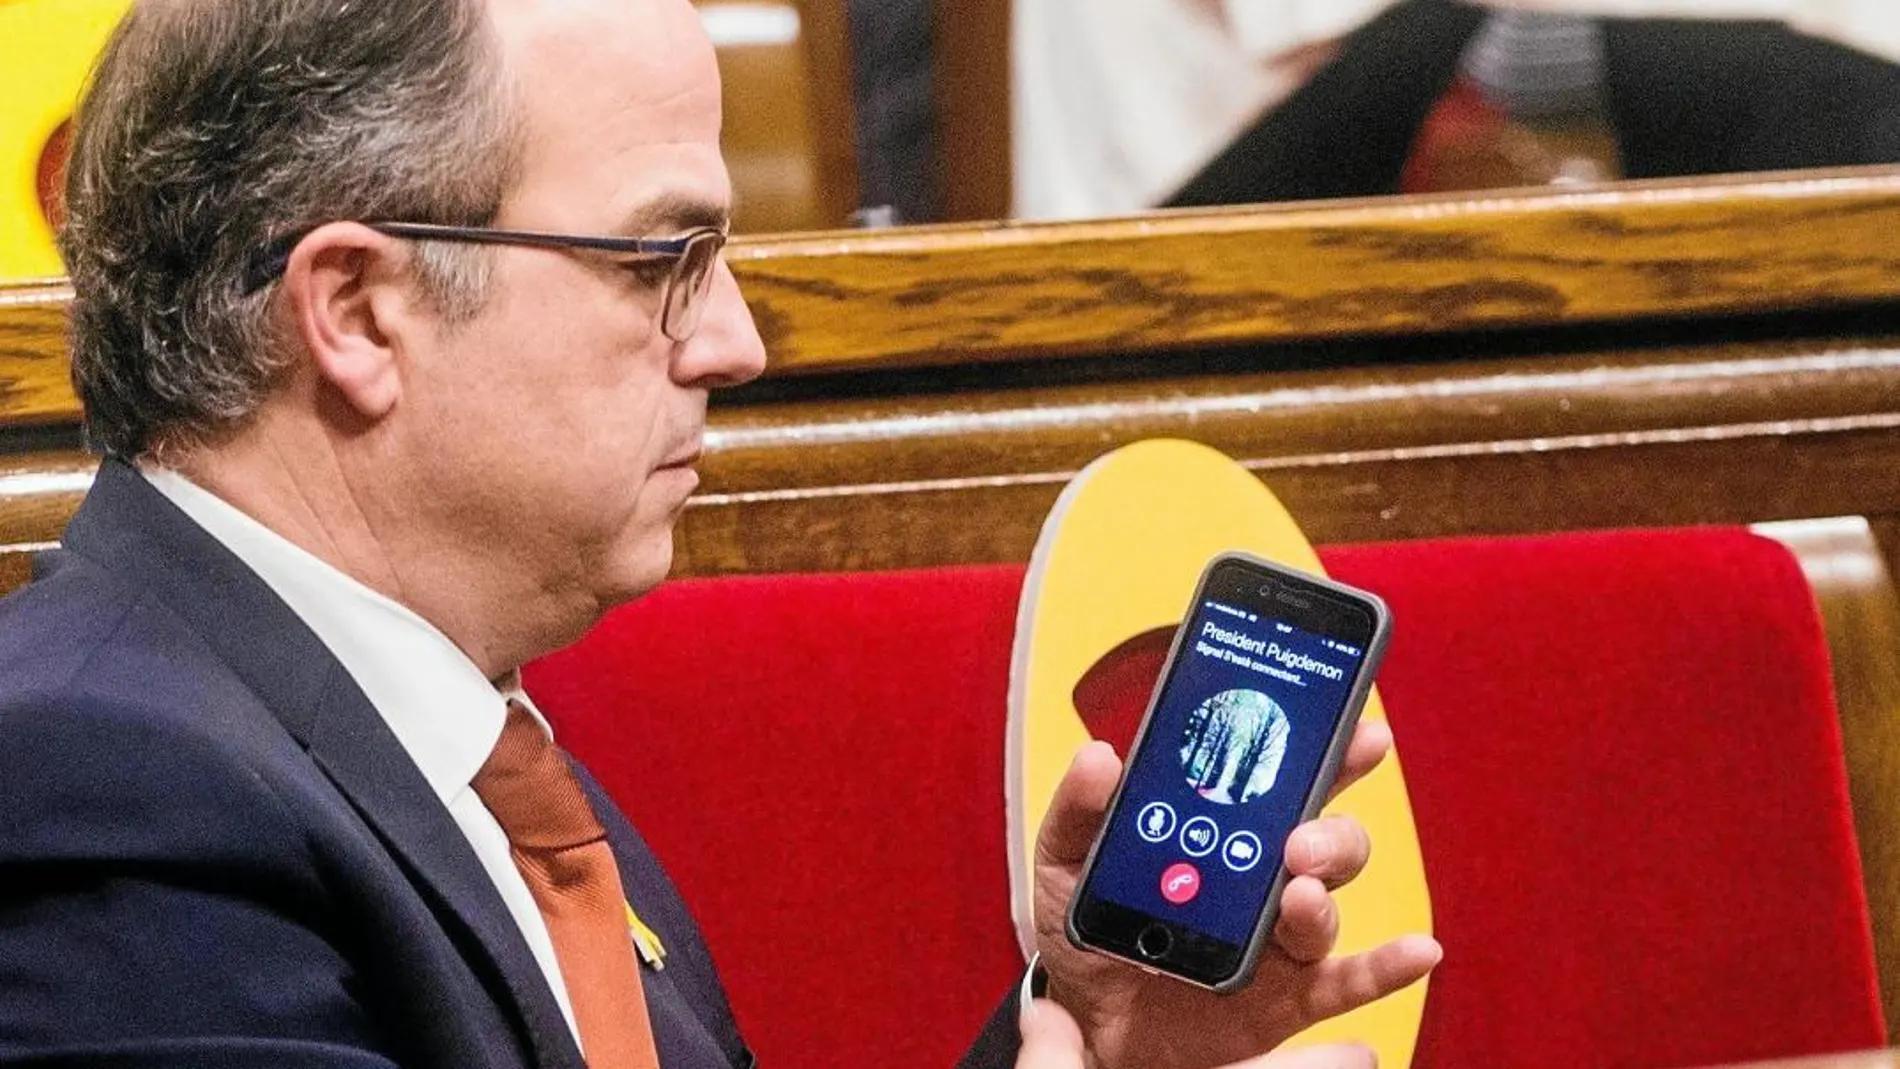 Turull, en el Parlament, atiende una llamada del ex president fugado, en una imagen de archivo